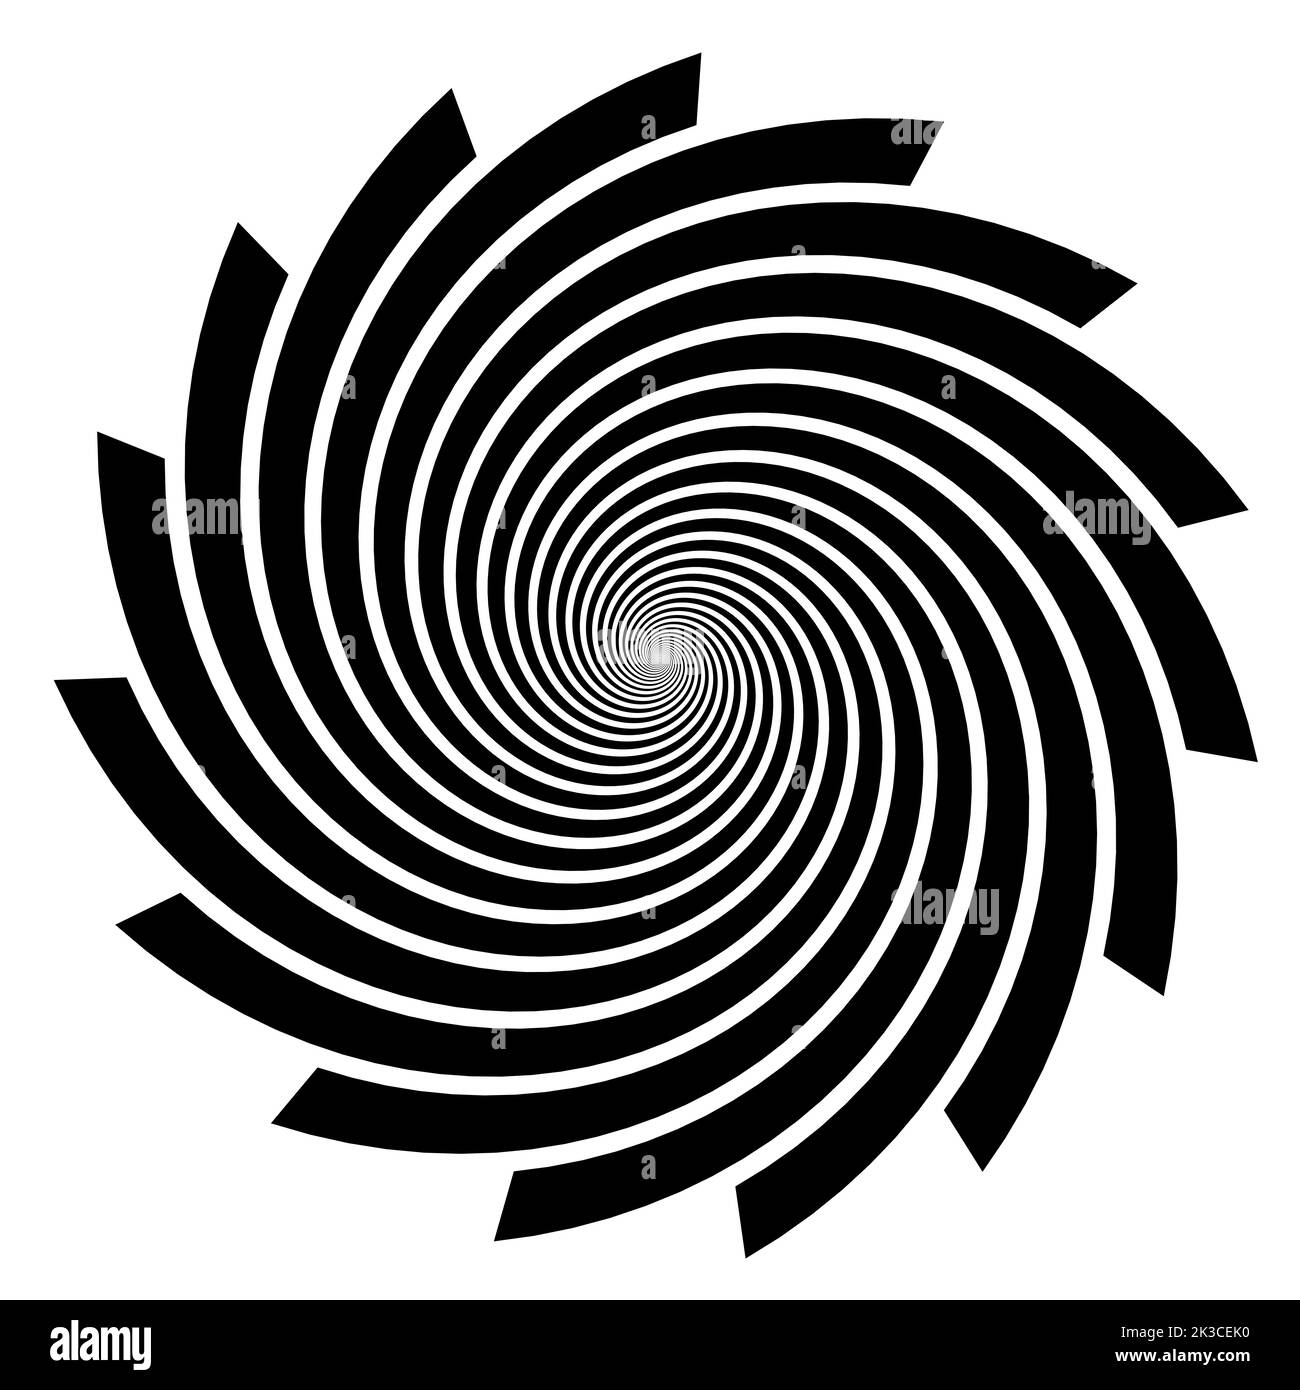 Spiralform isoliert auf weißem Hintergrund, schwarz-weiße Spiralikon-Illustration Stockfoto